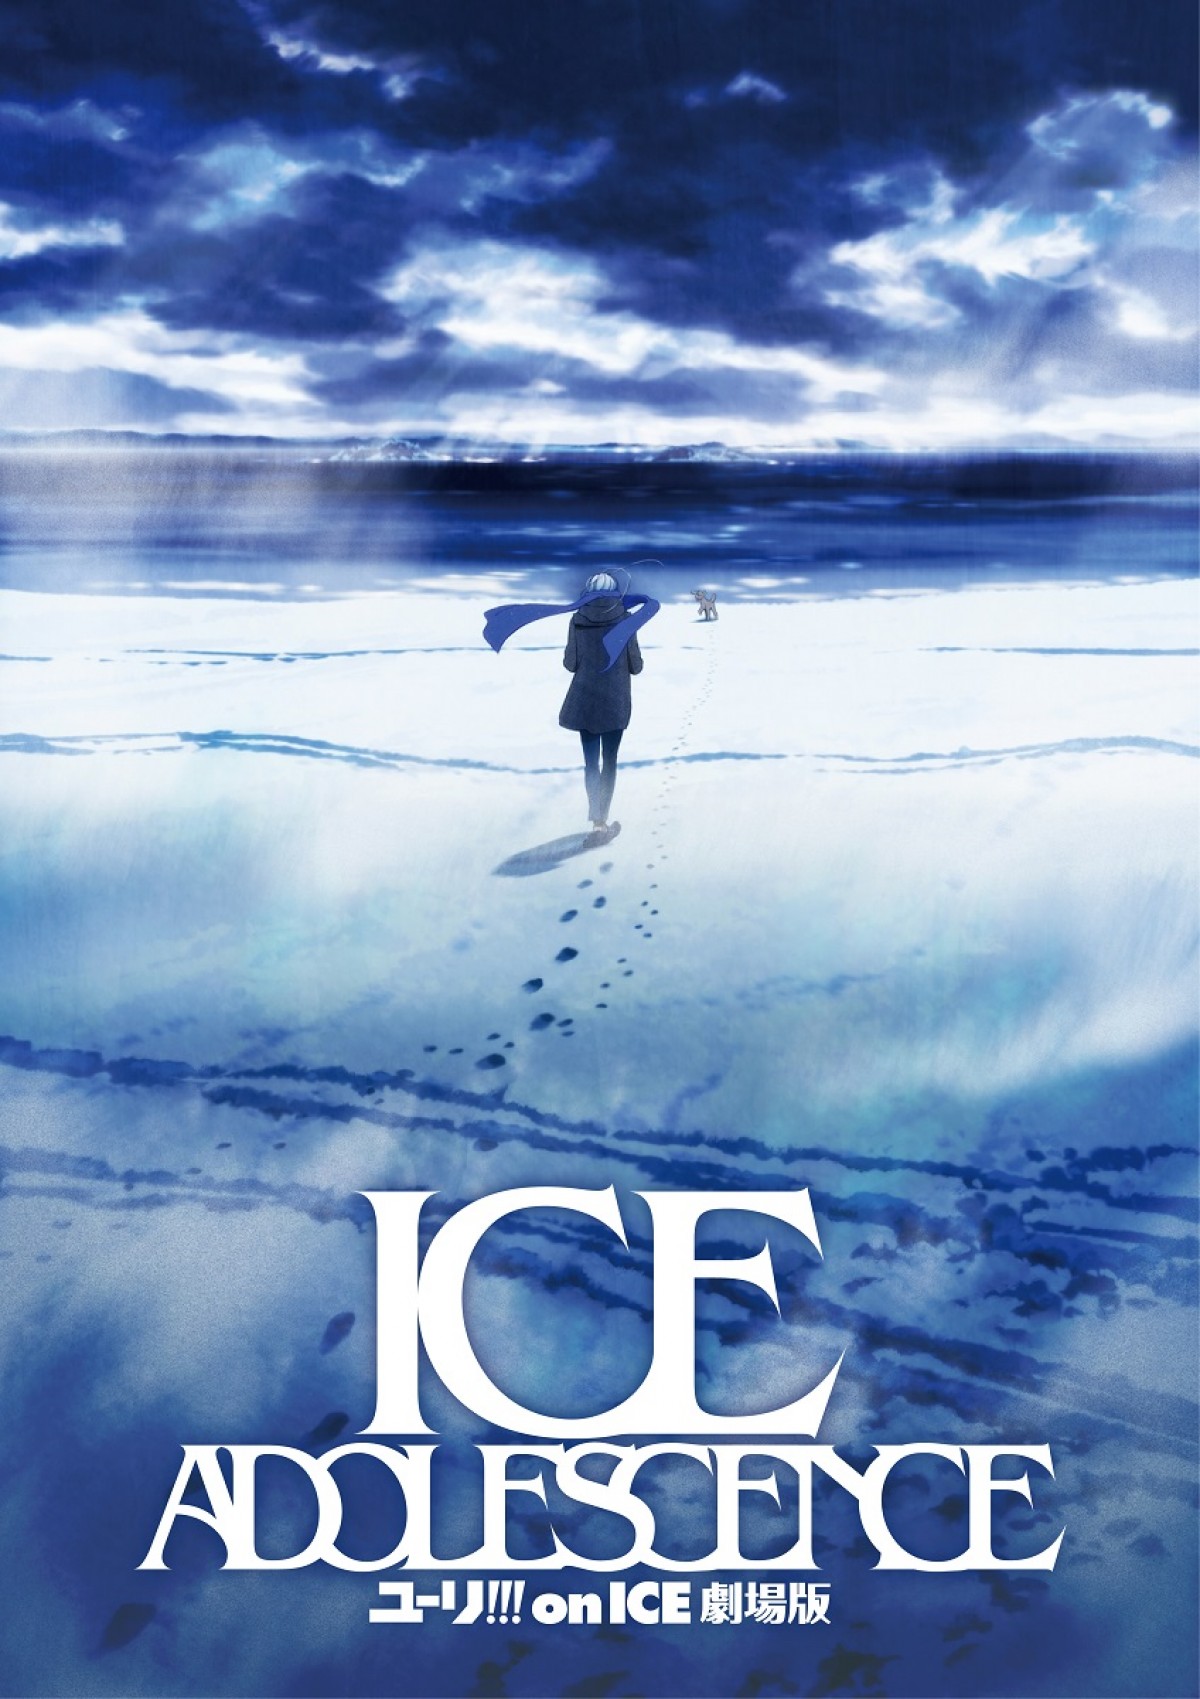 『ユーリ!!! on ICE』映画化決定